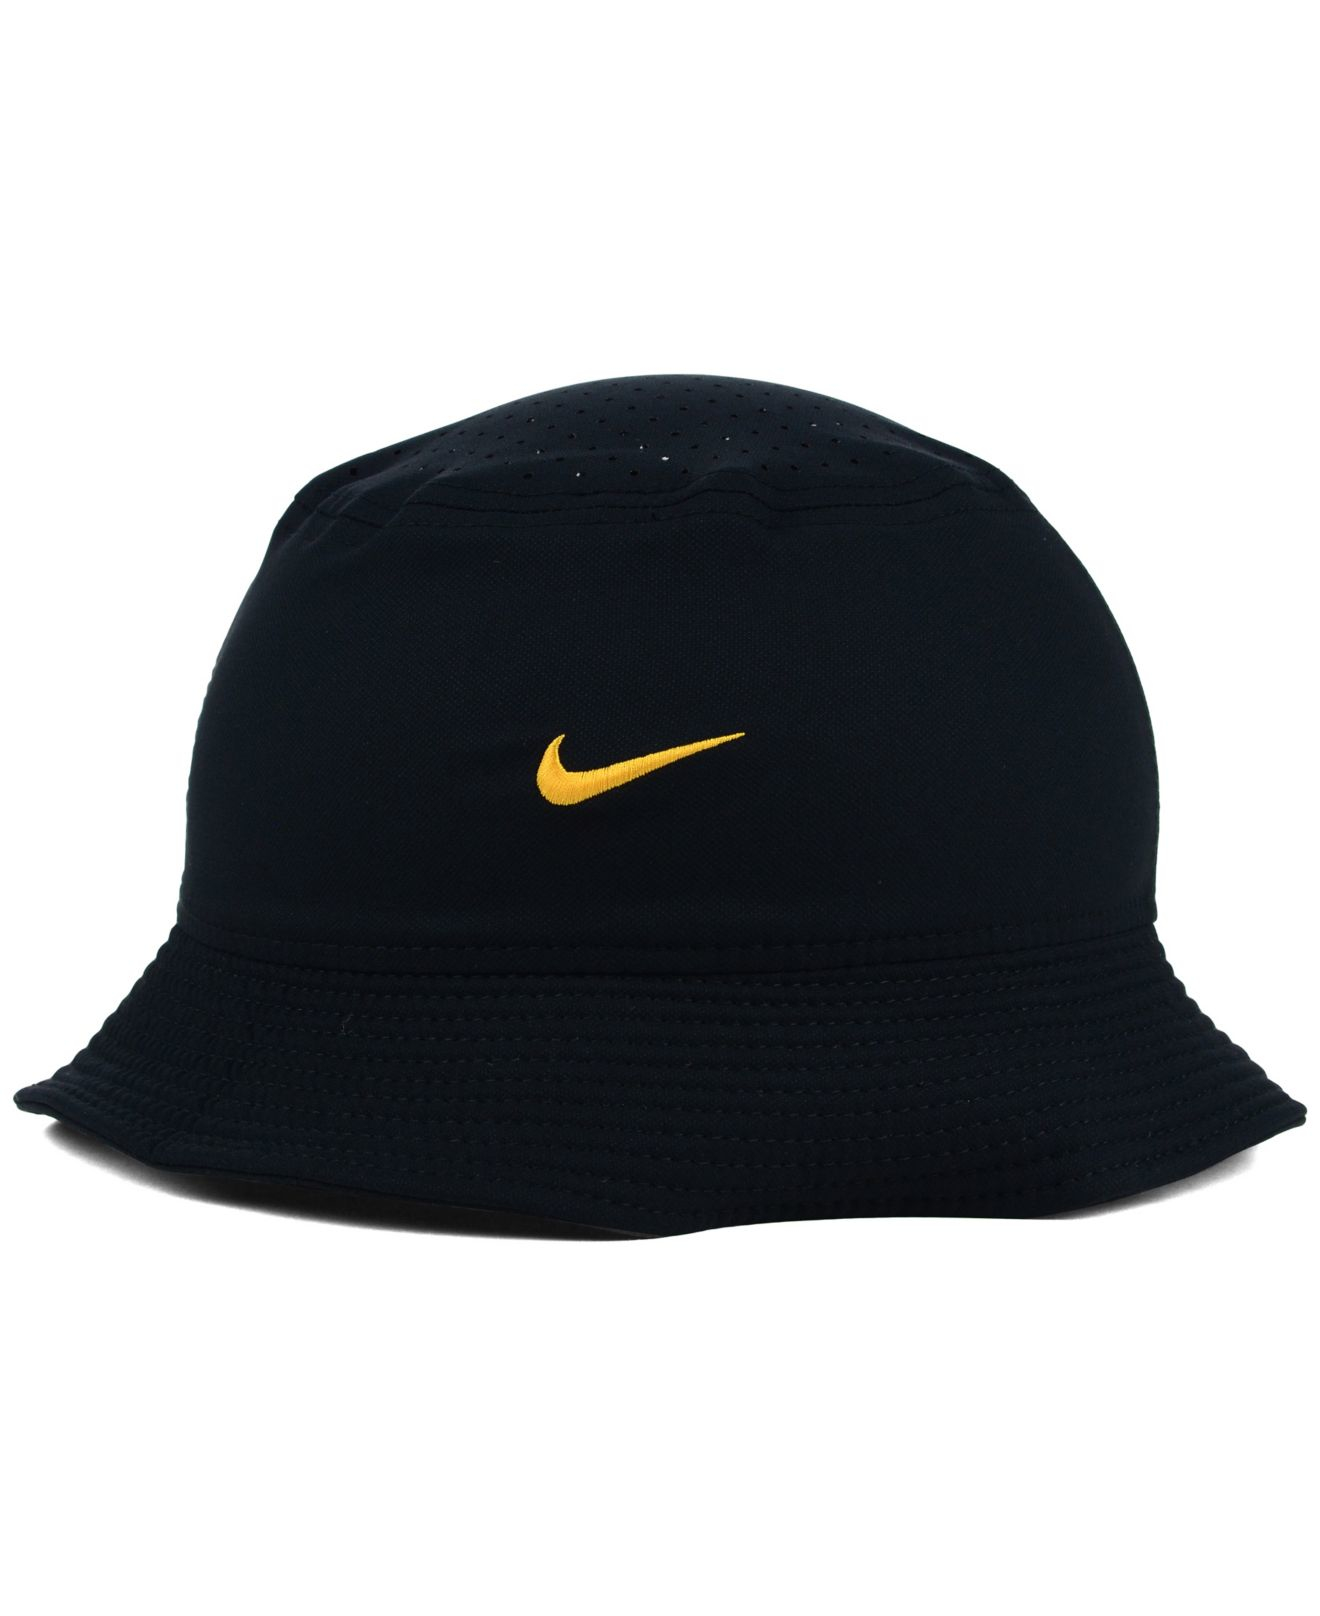 Nike Iowa Hawkeyes Vapor Bucket Hat in Black for Men - Lyst